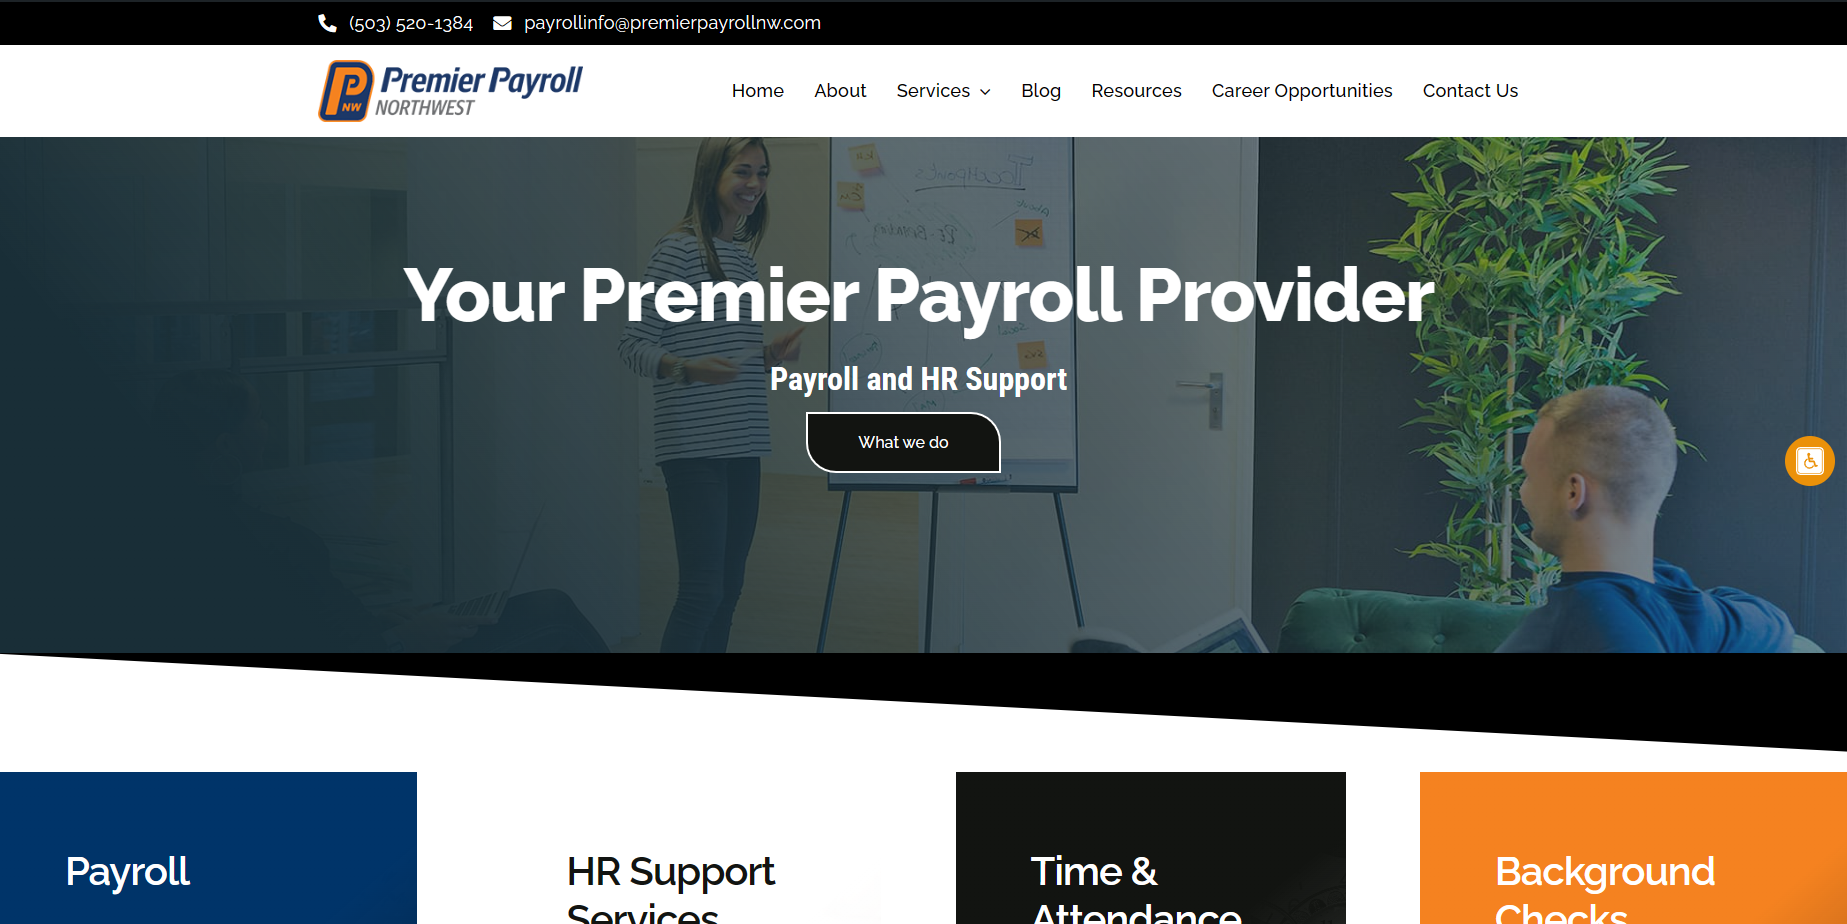 Premier Payroll